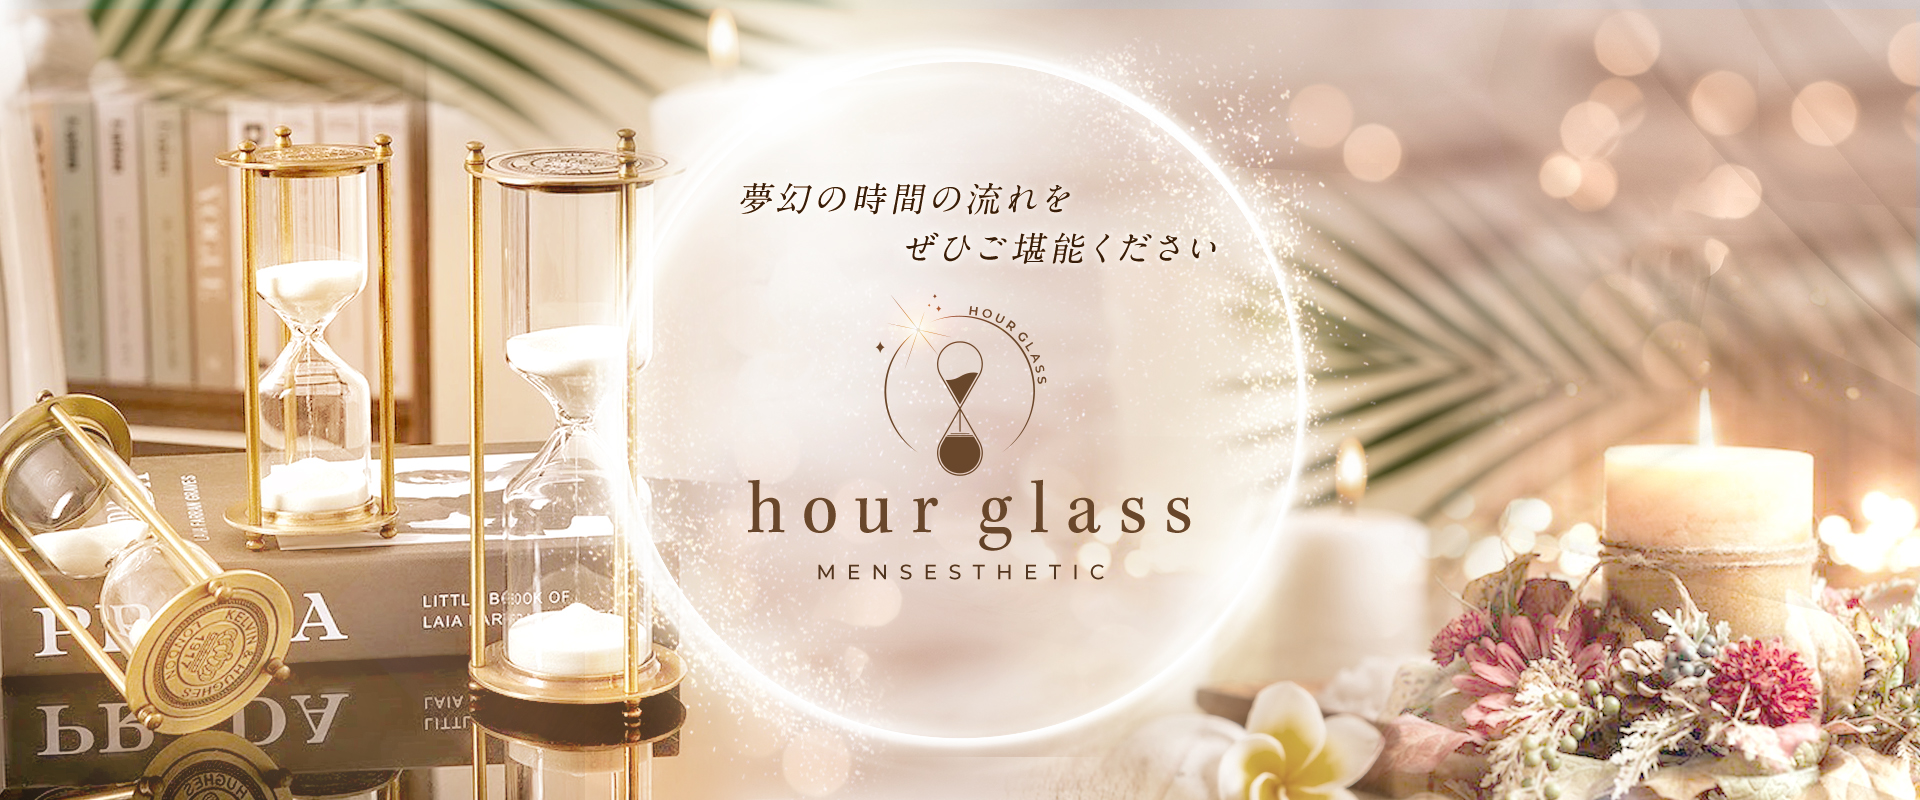 福岡 博多 メンズエステ『hour glass』